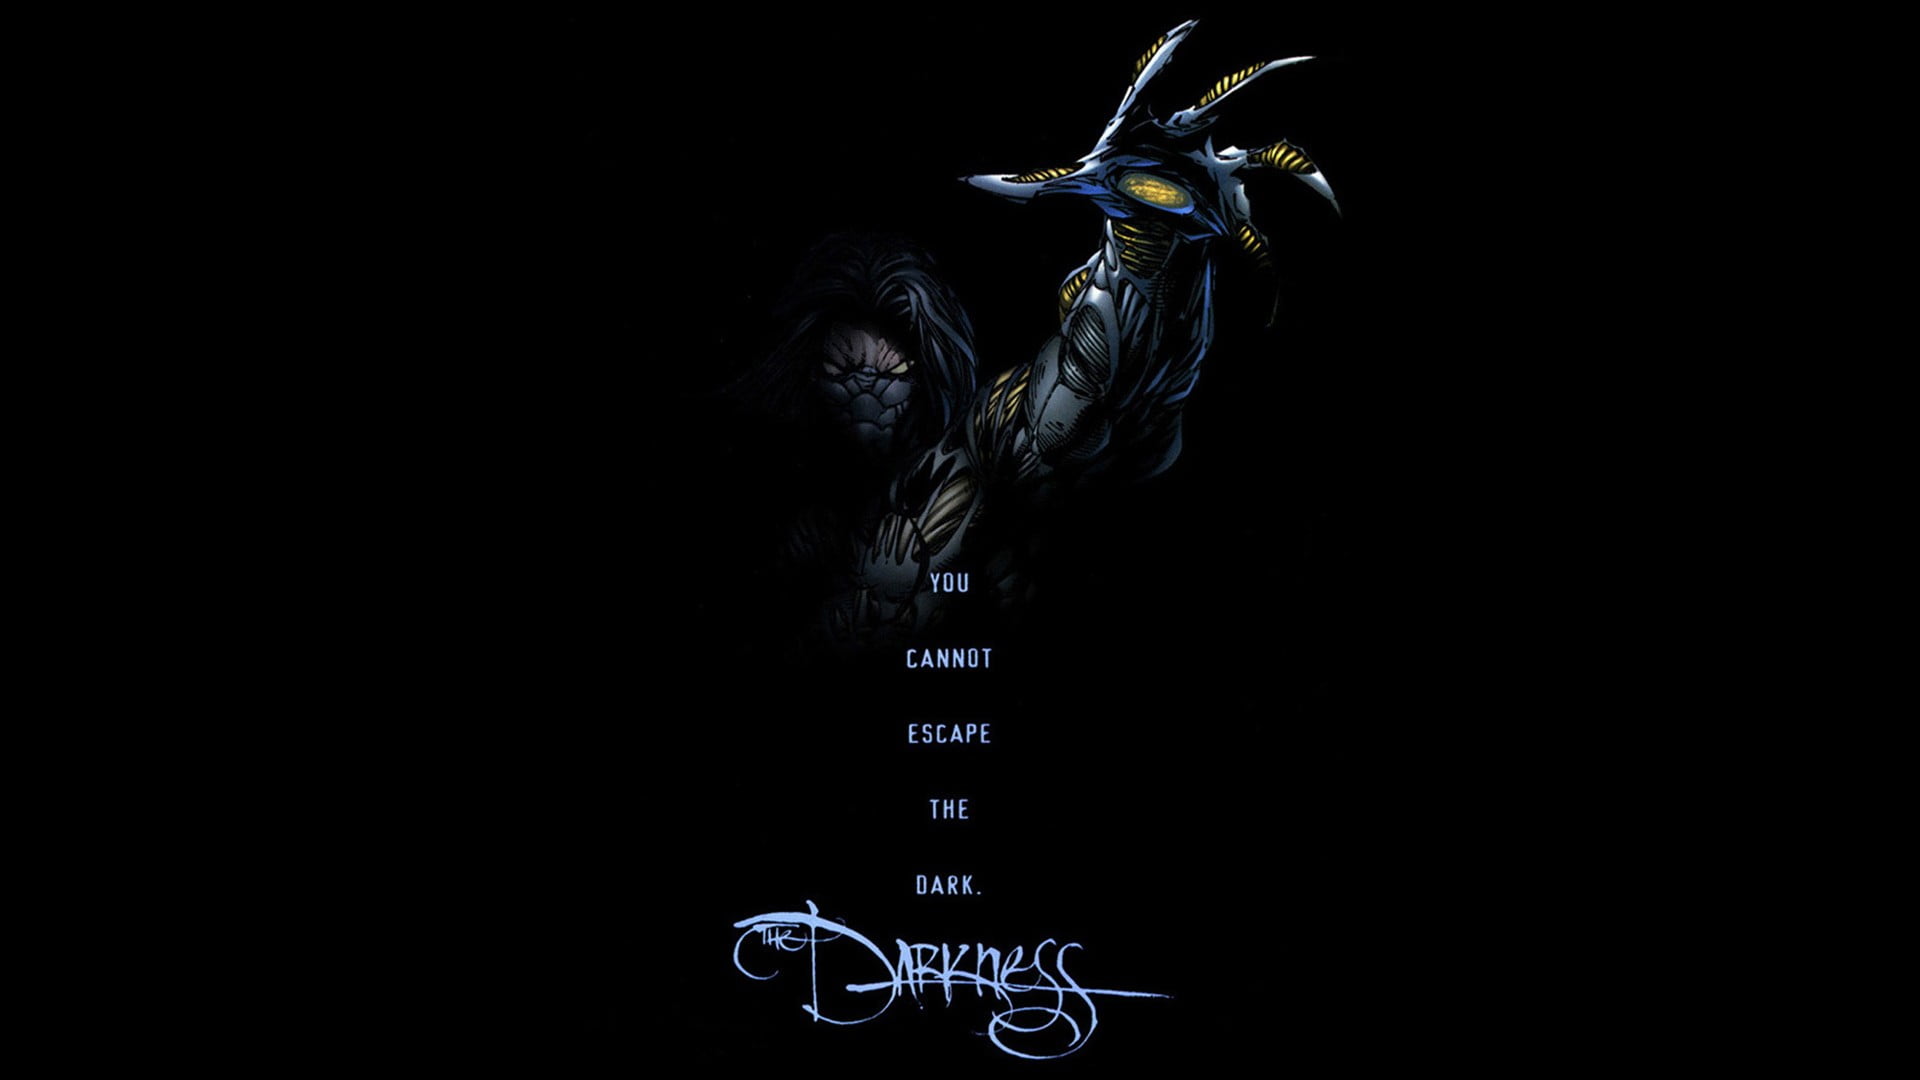 Darkness character digital wallpaper, the Darkness, comics, black background, Jackie Estacado